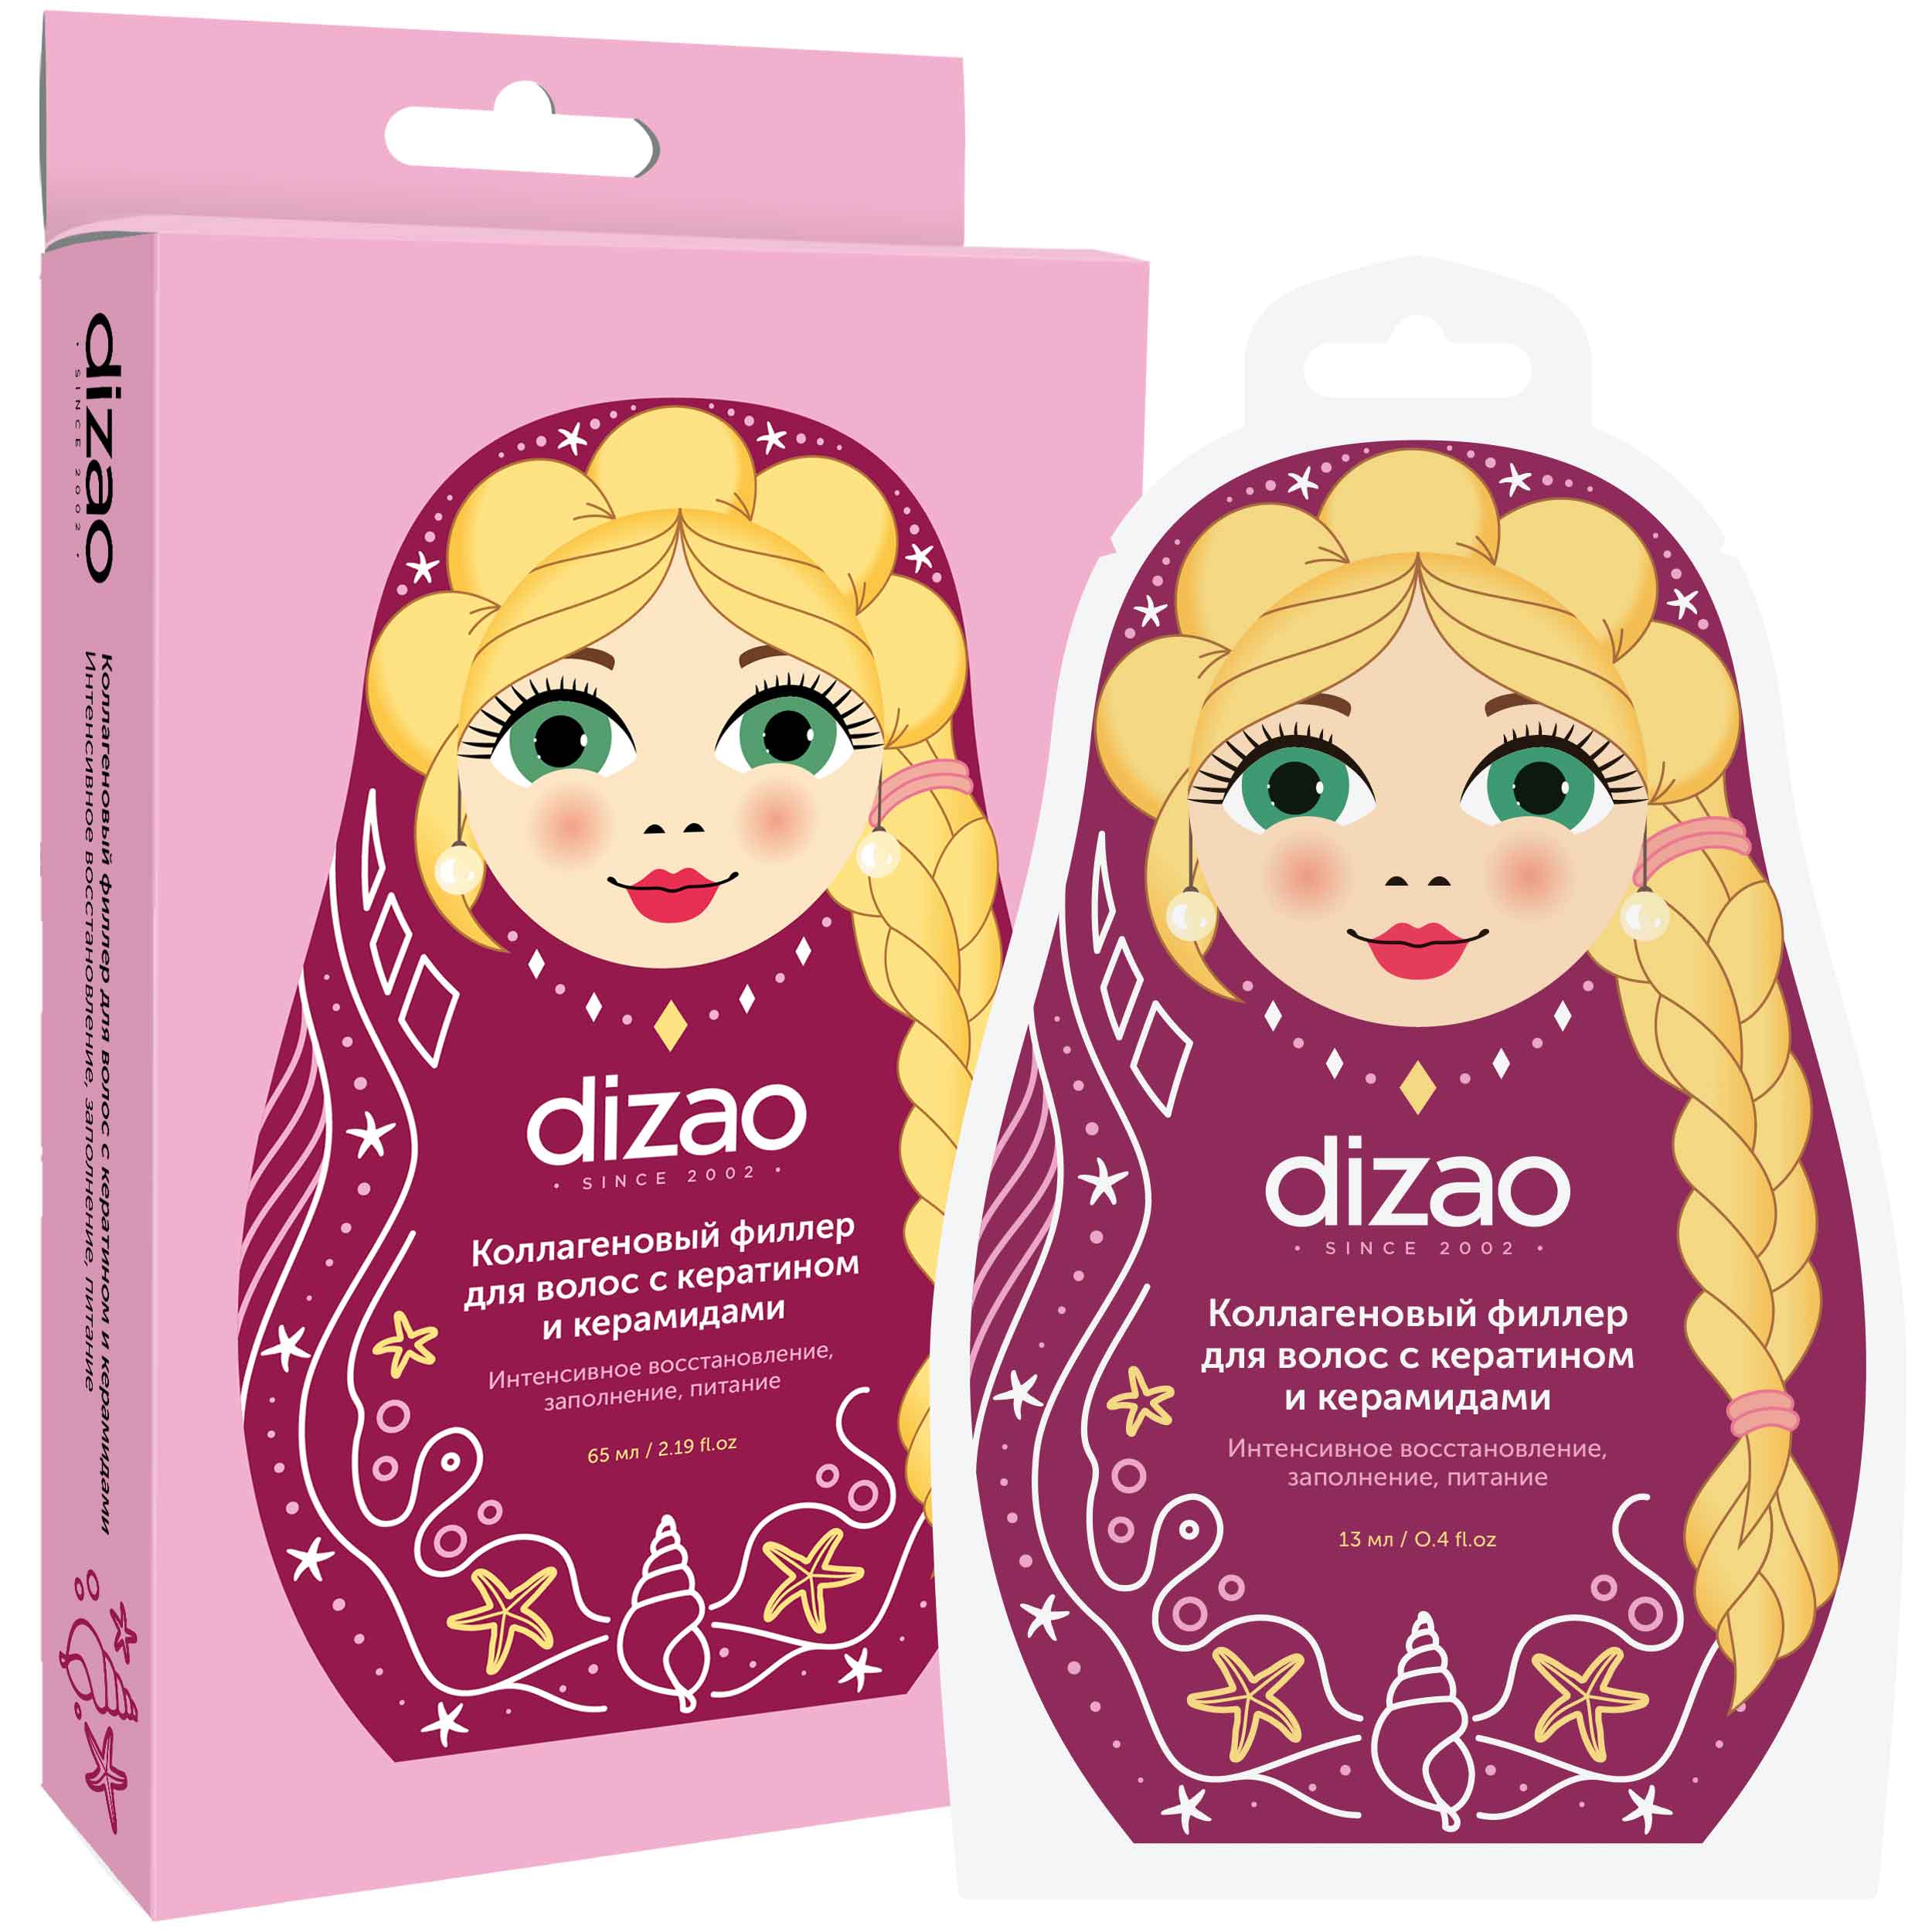 dizao филлер для волос коллагеновый с кератином и керамидами 0 18 г 13 мл 5 шт Dizao Коллагеновый филлер для волос с кератином и керамидами,1 шт (Dizao, Для волос)